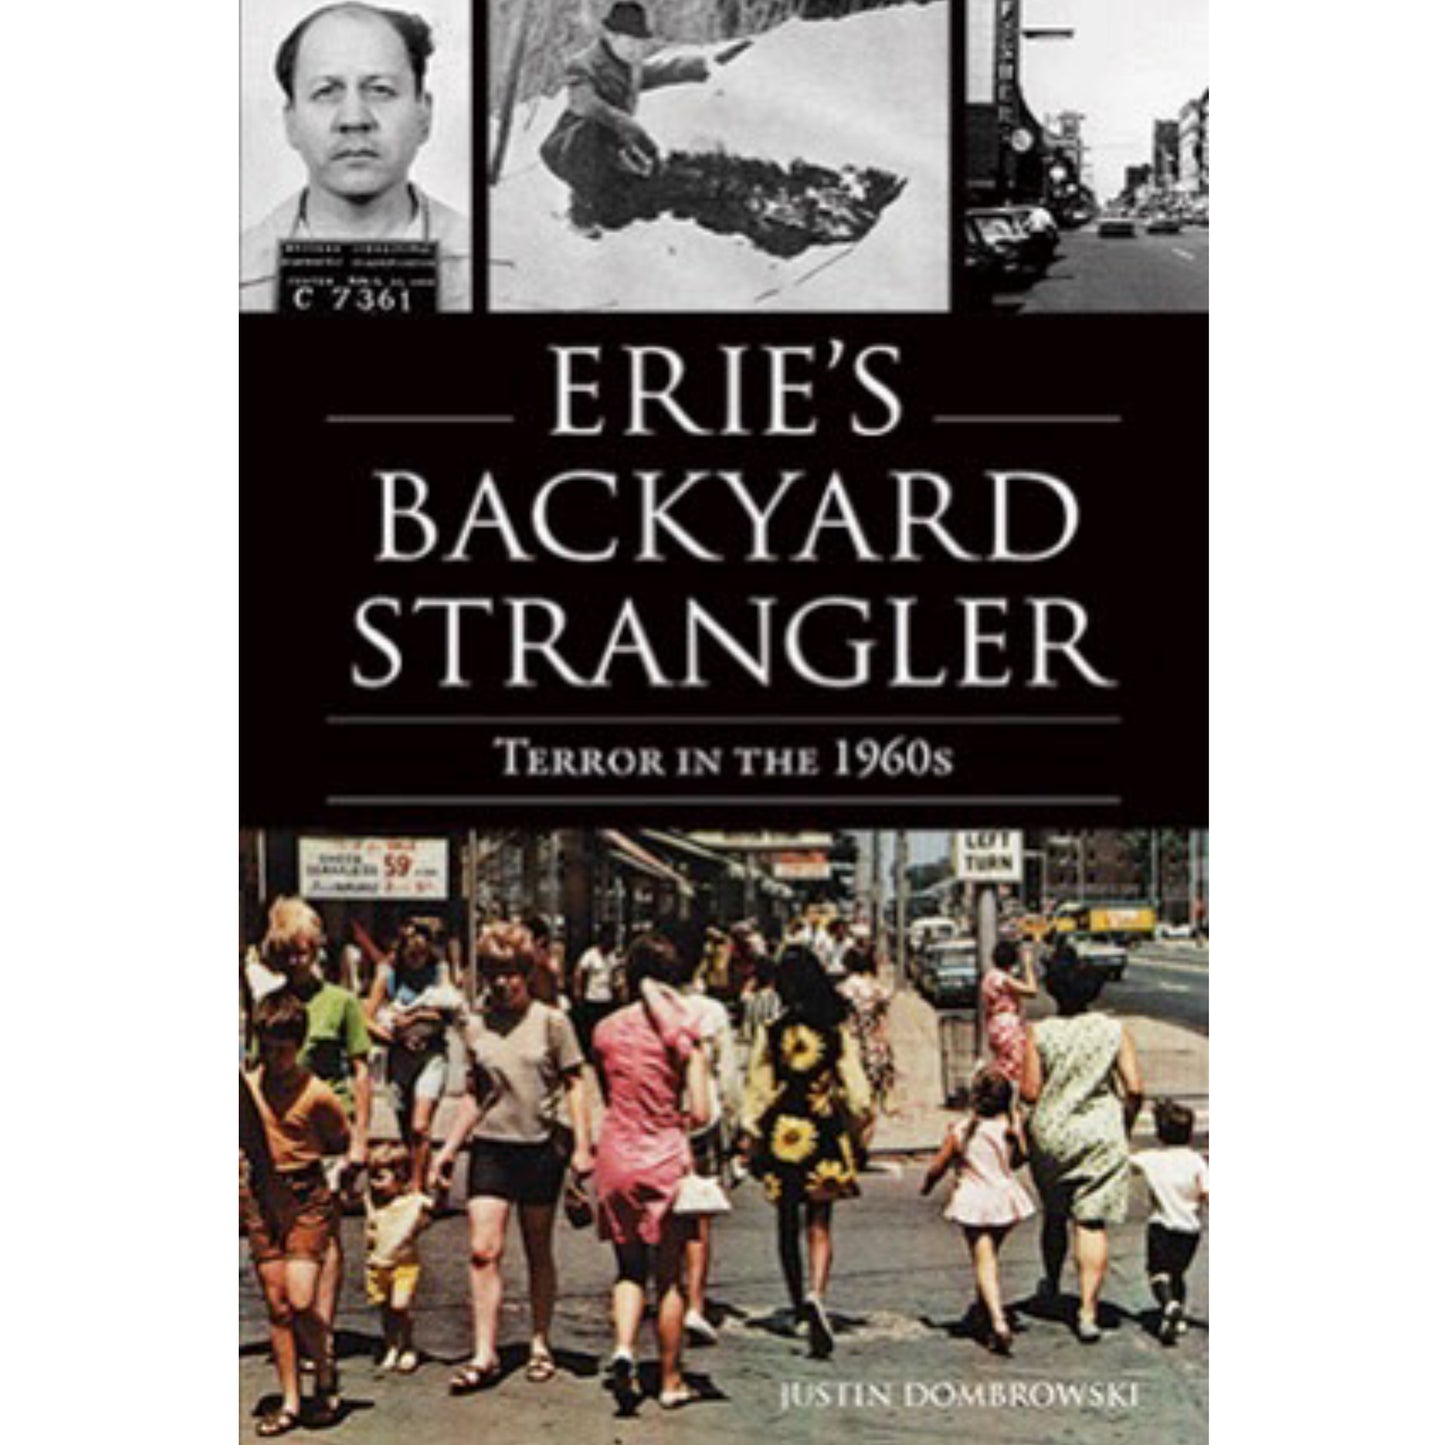 Erie's Backyard Strangler: Terror in the 1960's